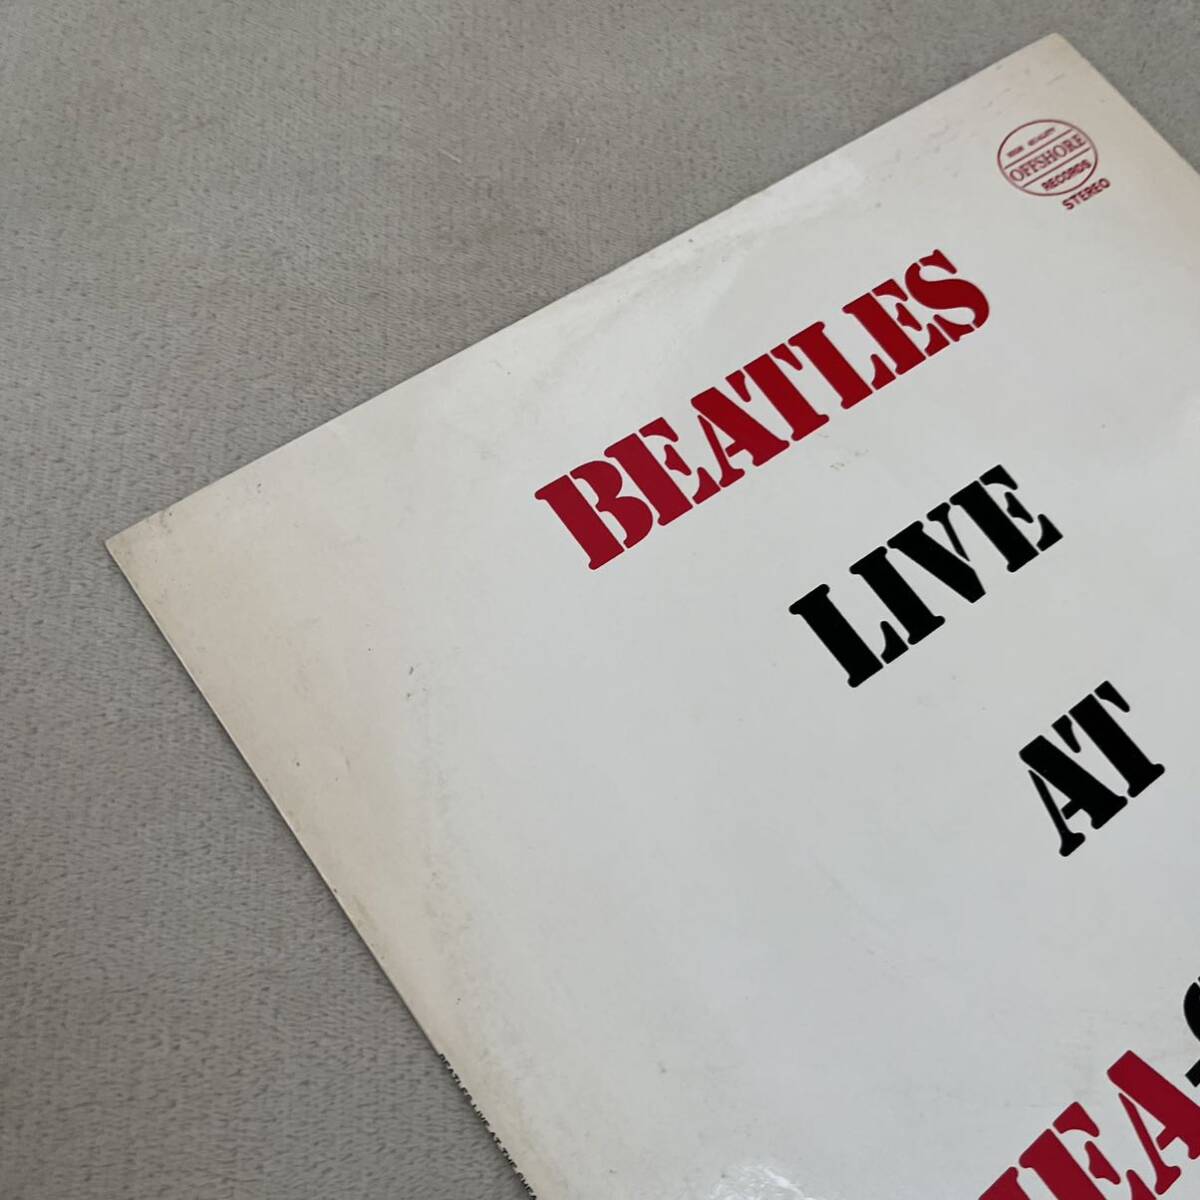 【ペラジャケ】BEATLES LIVE AT SHEA STADIUM IN 1964 ビートルズ / LP レコード / OG802 OF-730 / 洋楽ロック /_画像5